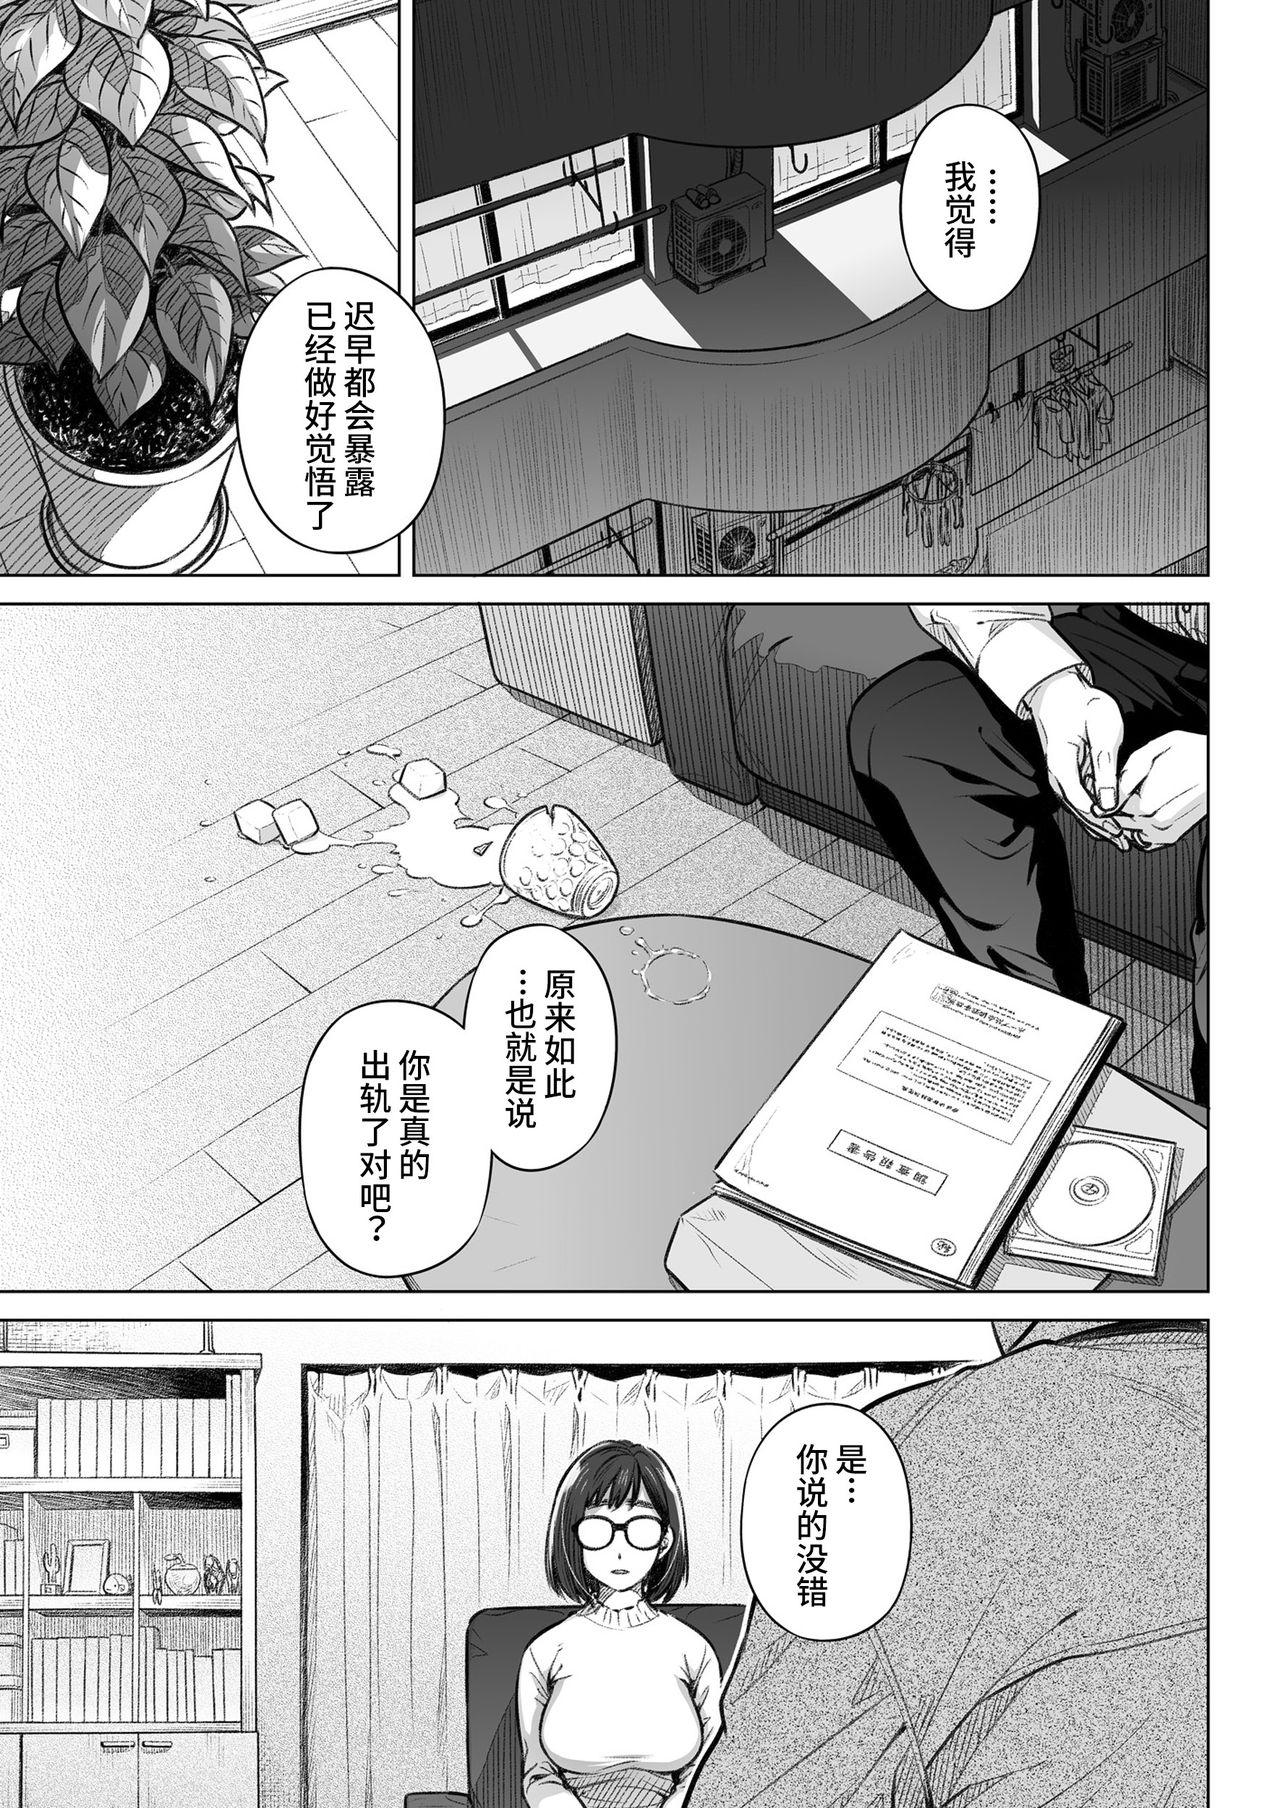 Culito Kurata Akiko no Kokuhaku 1 - Confession of Akiko kurata Epsode 1 | 仓田有稀子的告白 第1话 - Original Gay Hairy - Page 4